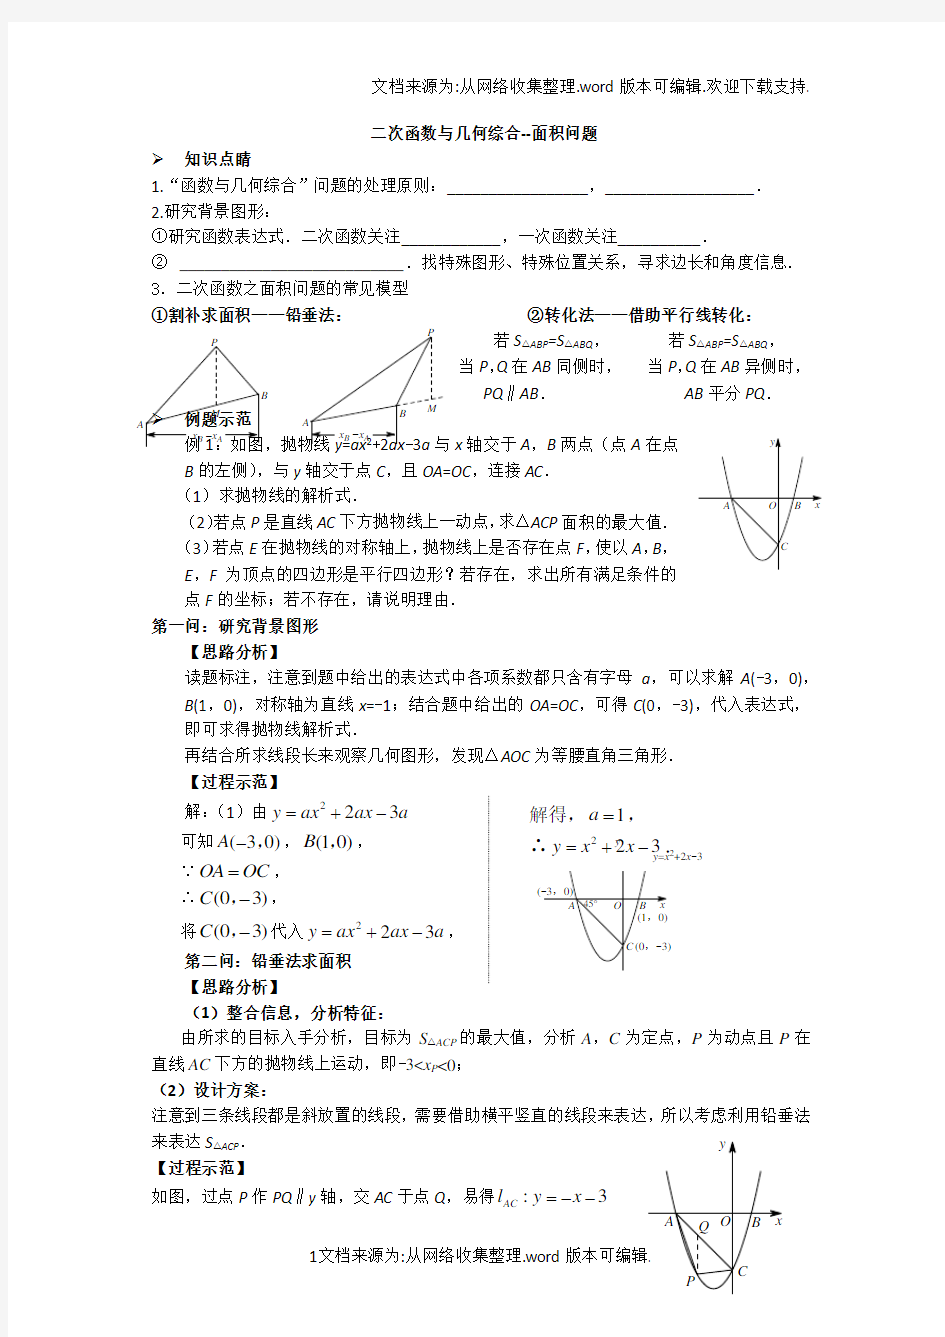 二次函数与几何综合面积问题(供参考)